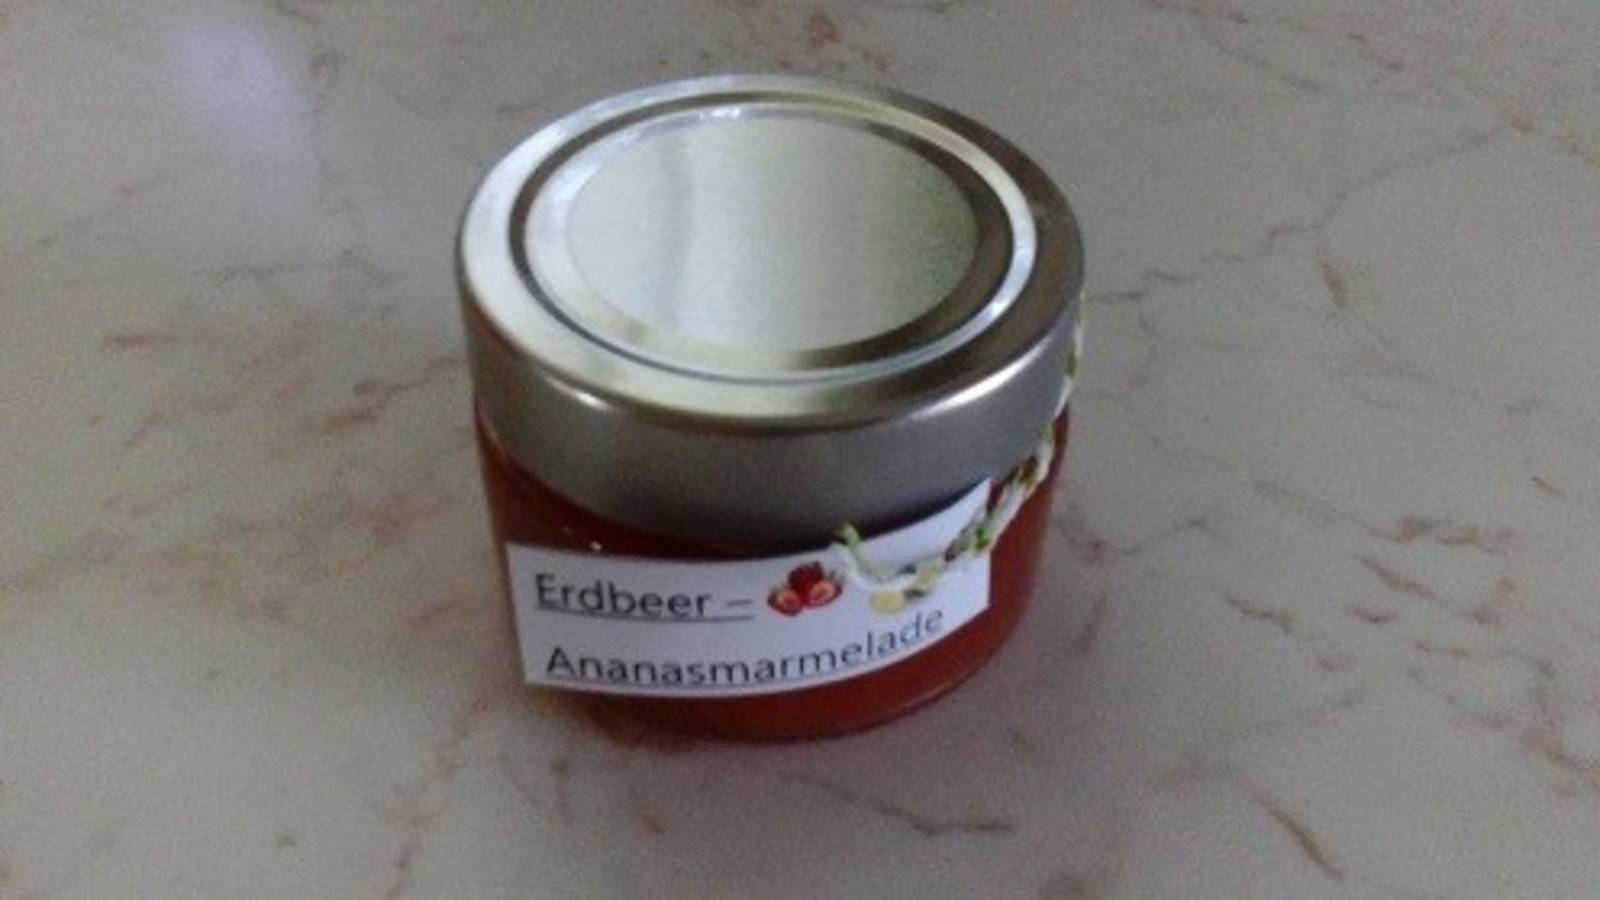 Erdbeer-Ananas-Marmelade